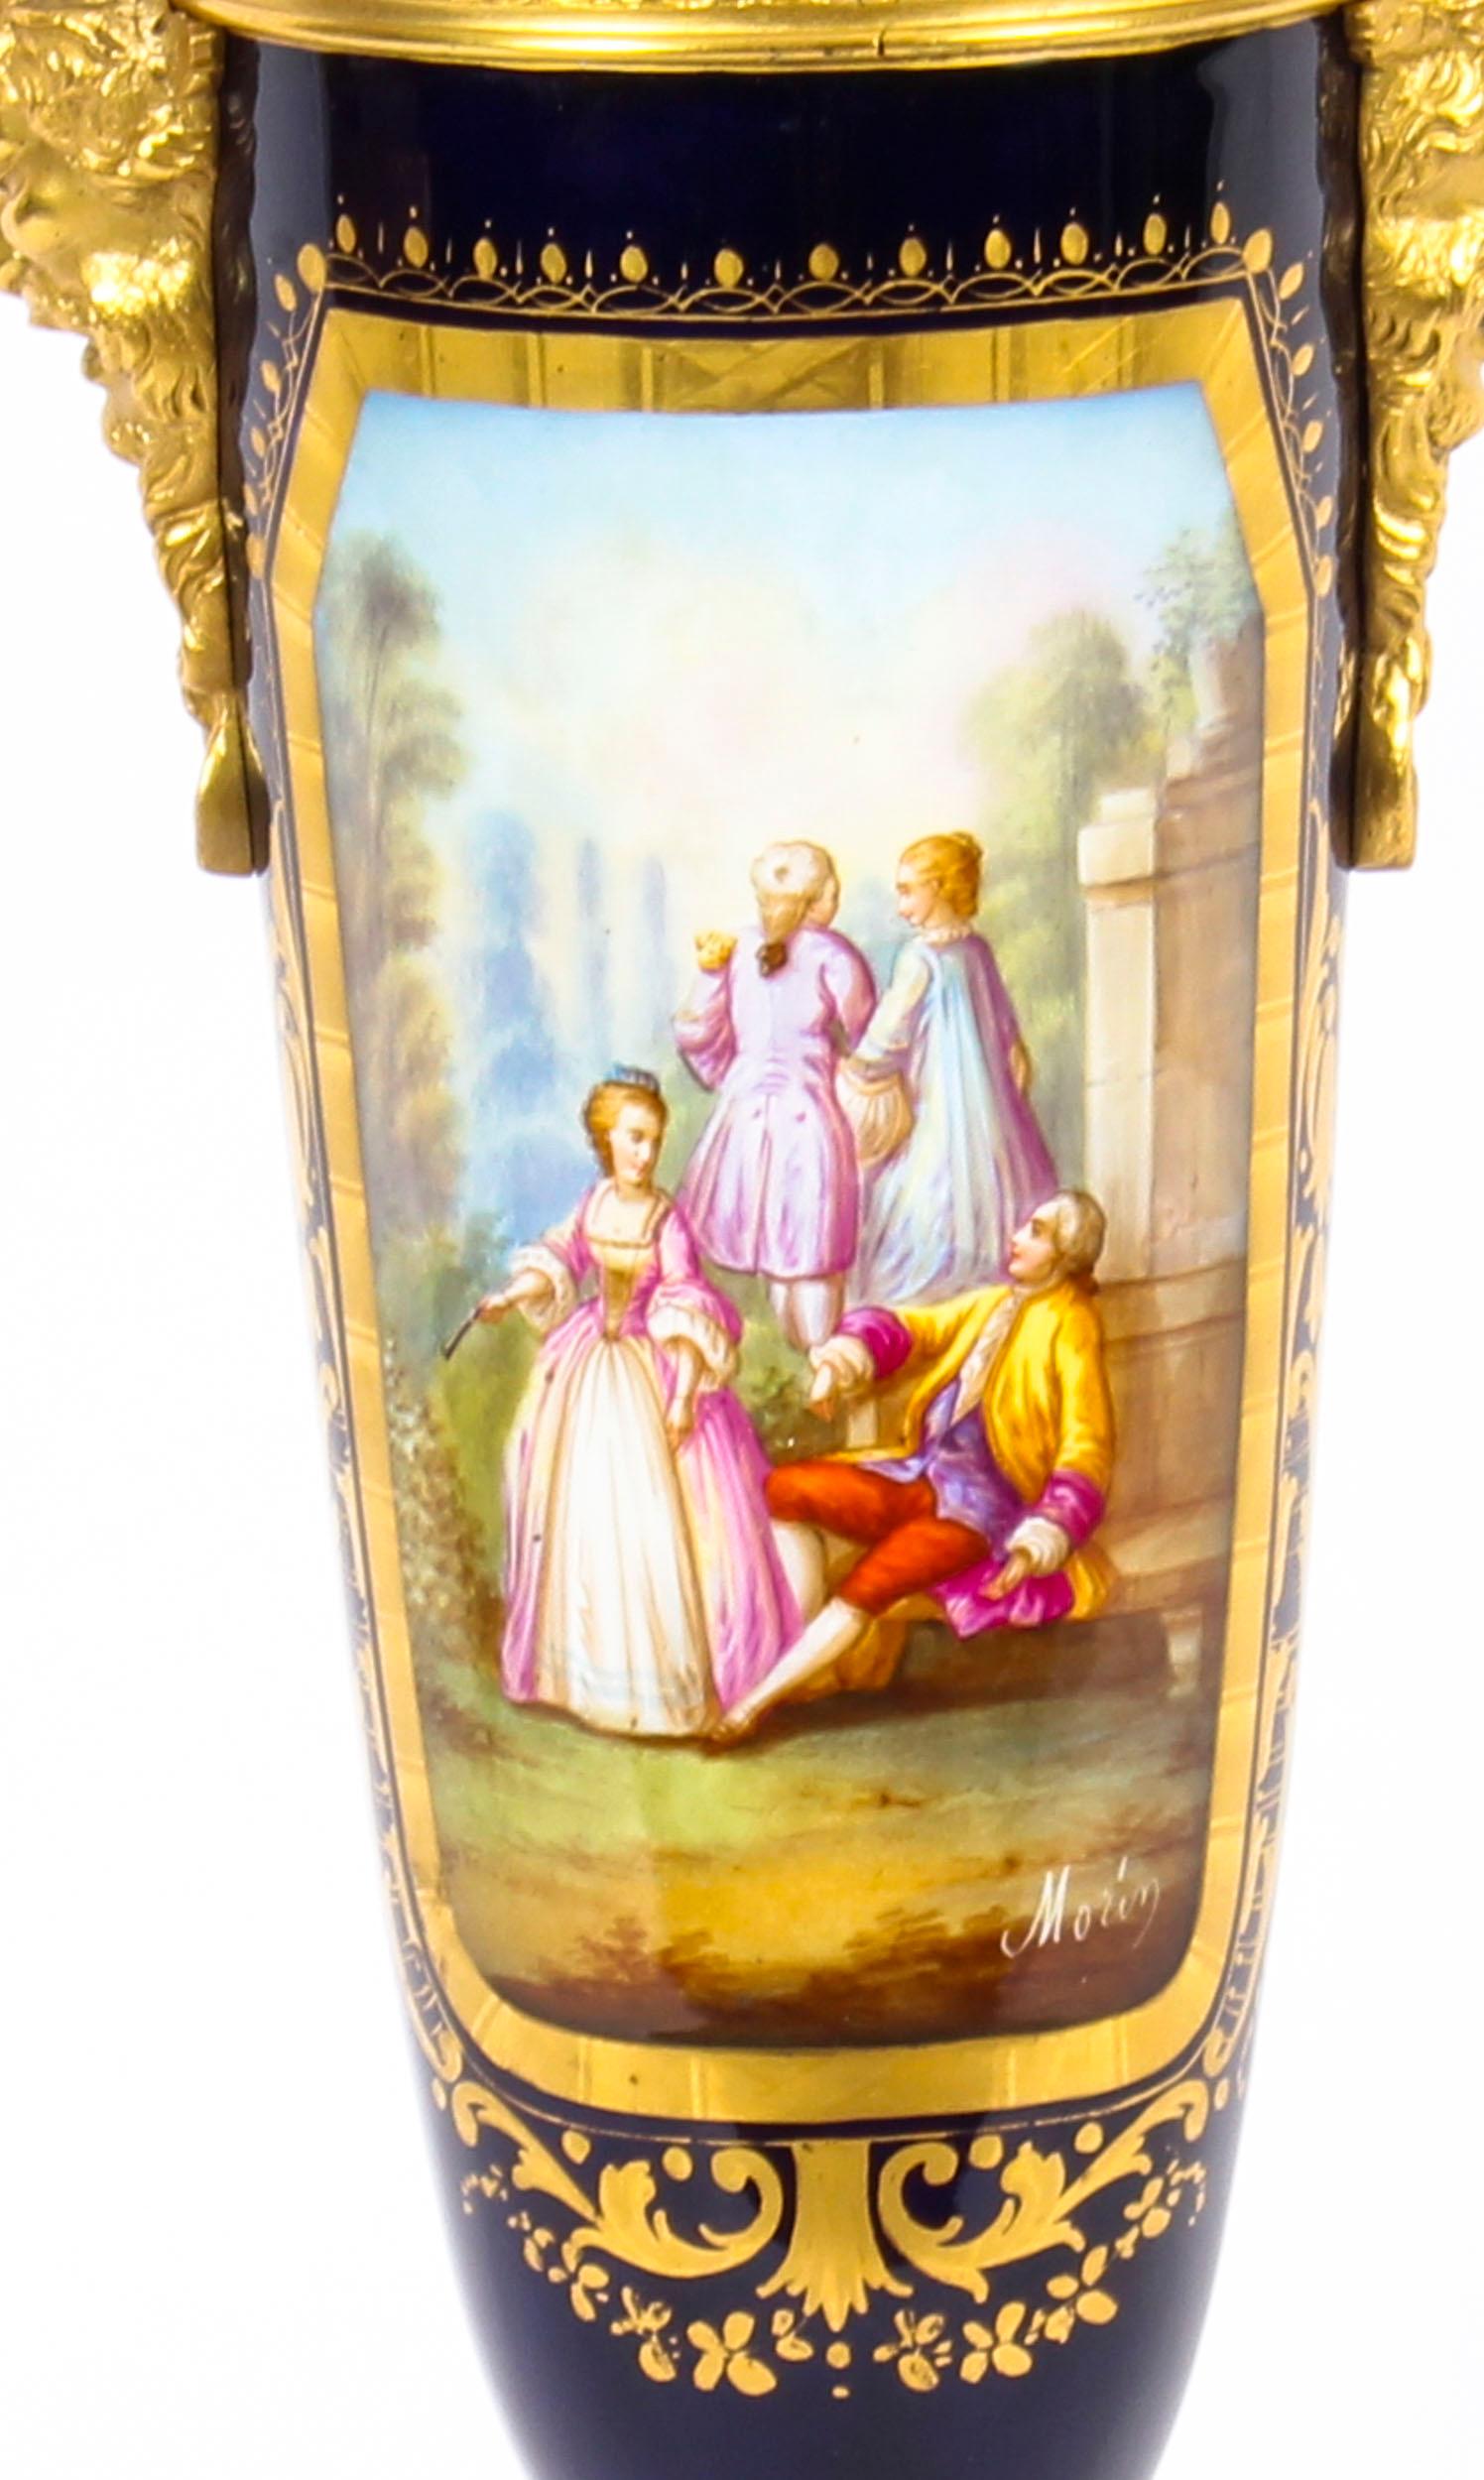 Il s'agit d'un magnifique grand vase ancien en porcelaine de Sèvres 